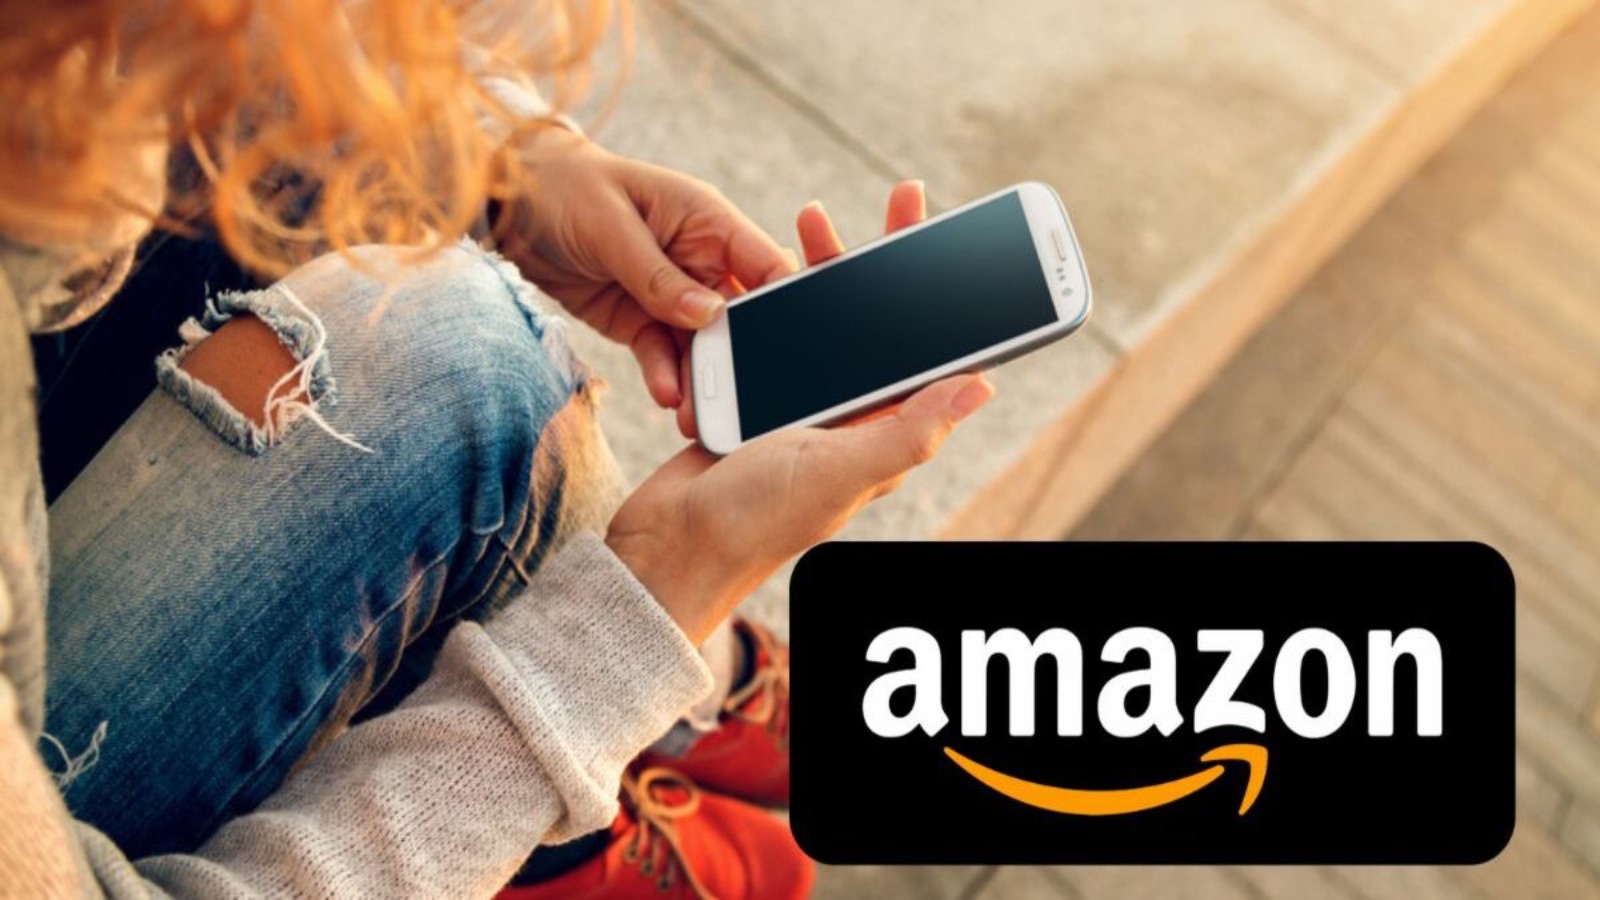 Offerte online, Amazon FUORITUTTO: sconti al 70% solo oggi